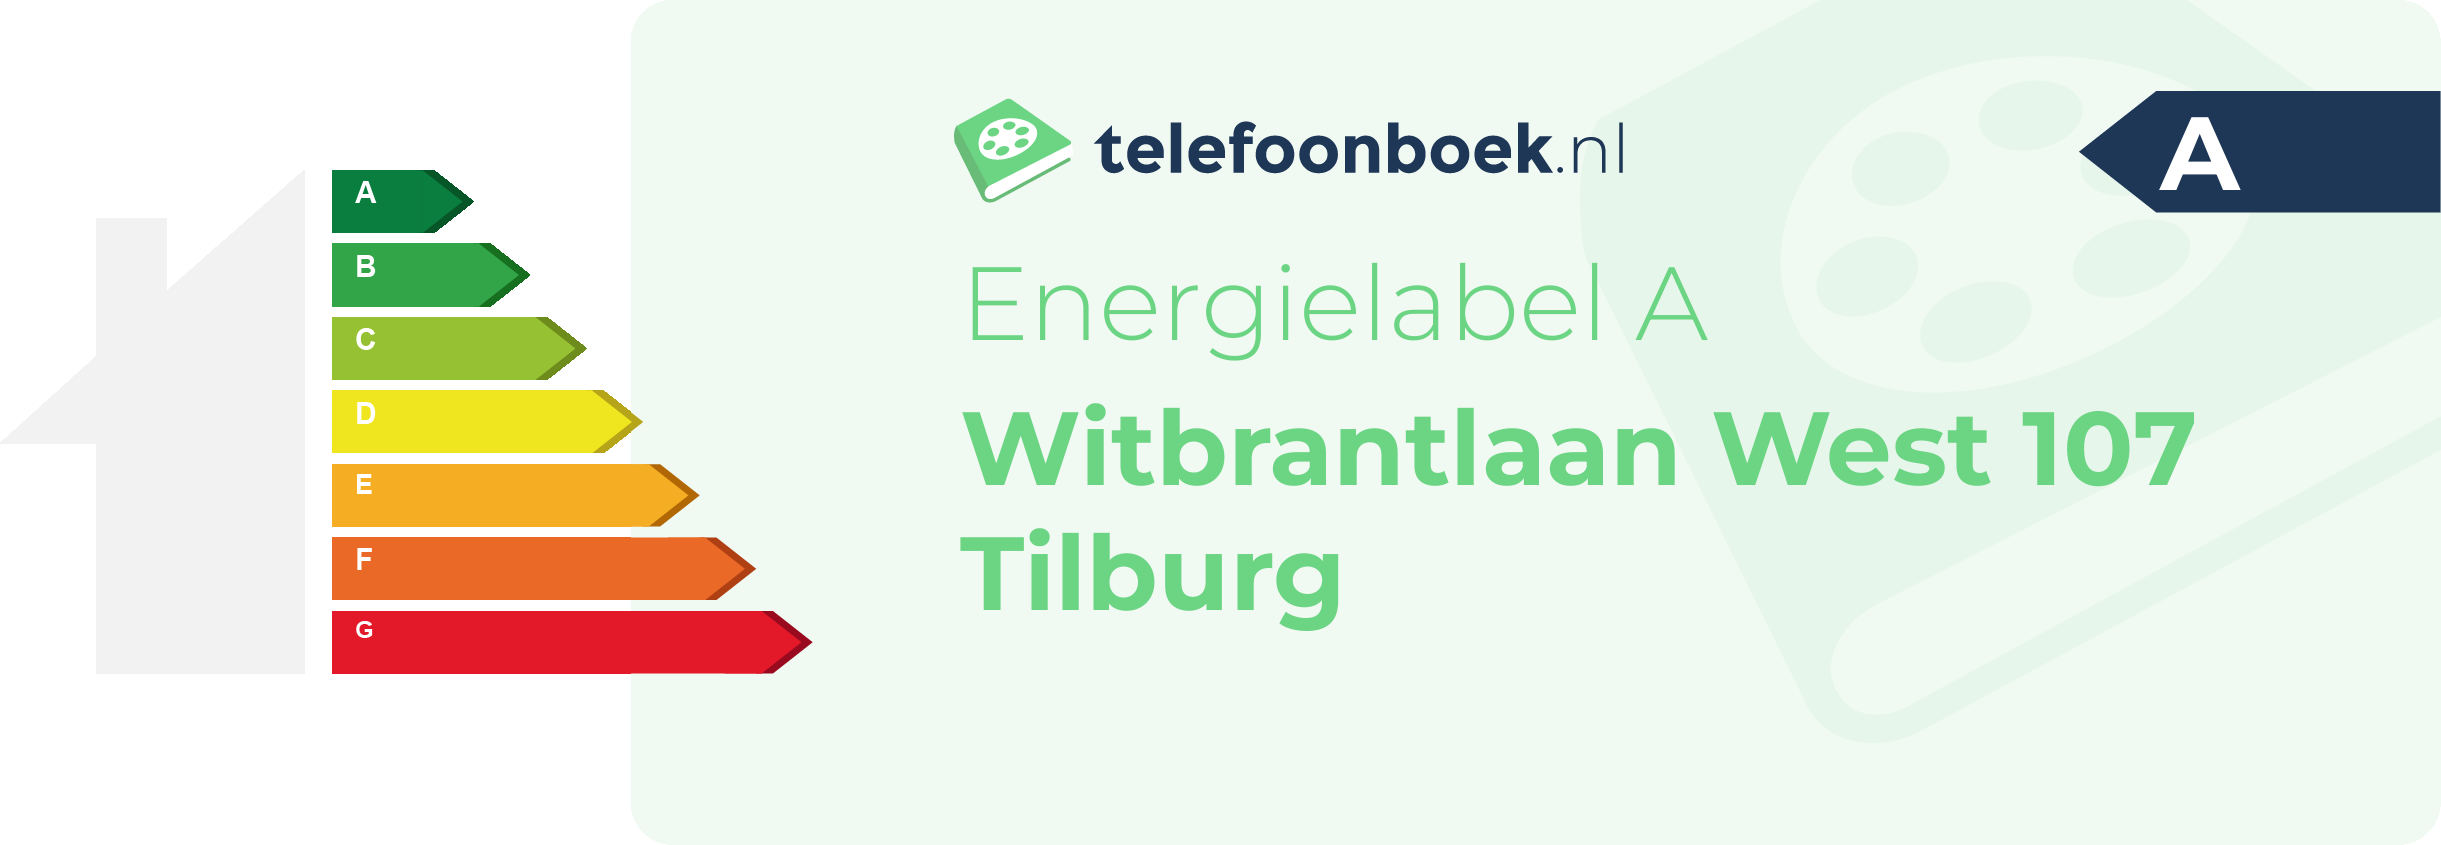 Energielabel Witbrantlaan West 107 Tilburg